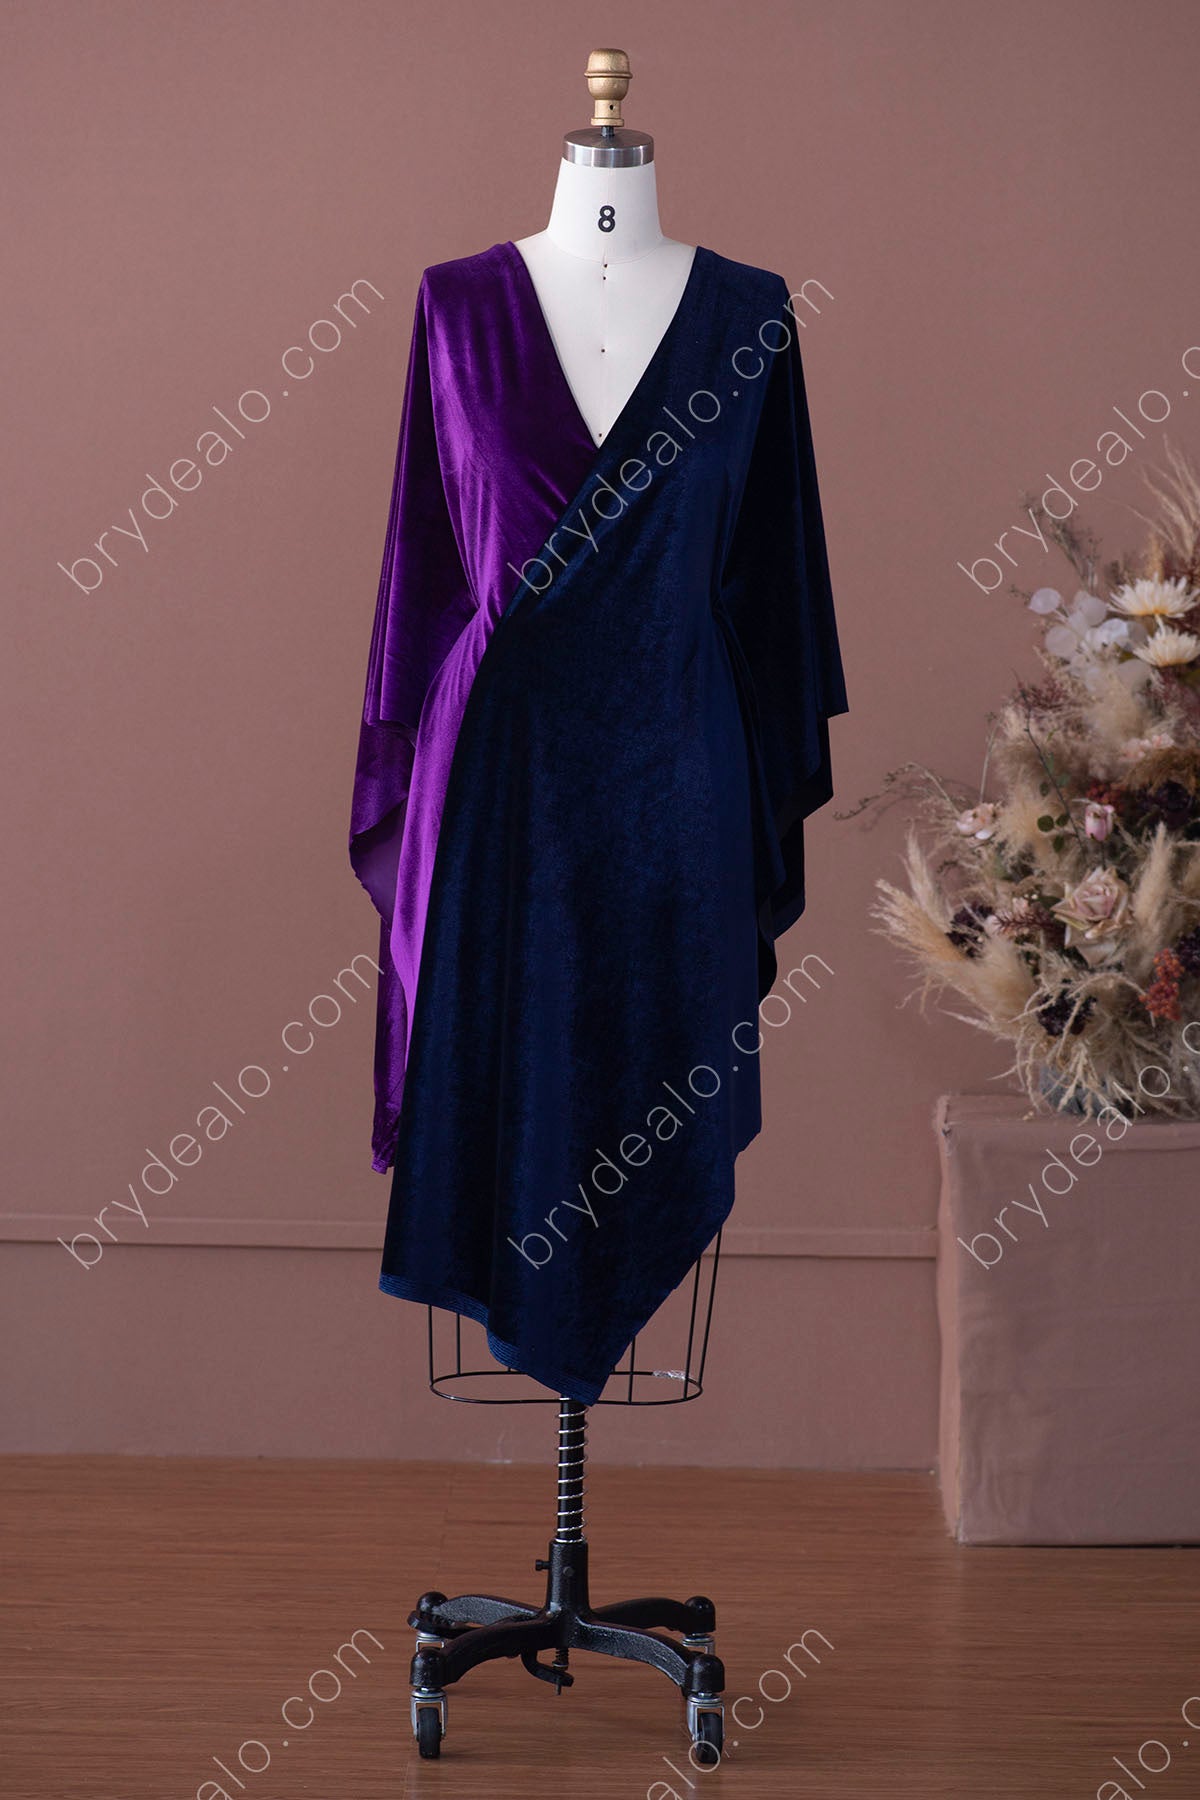 velvet fabric for custom formal dresses